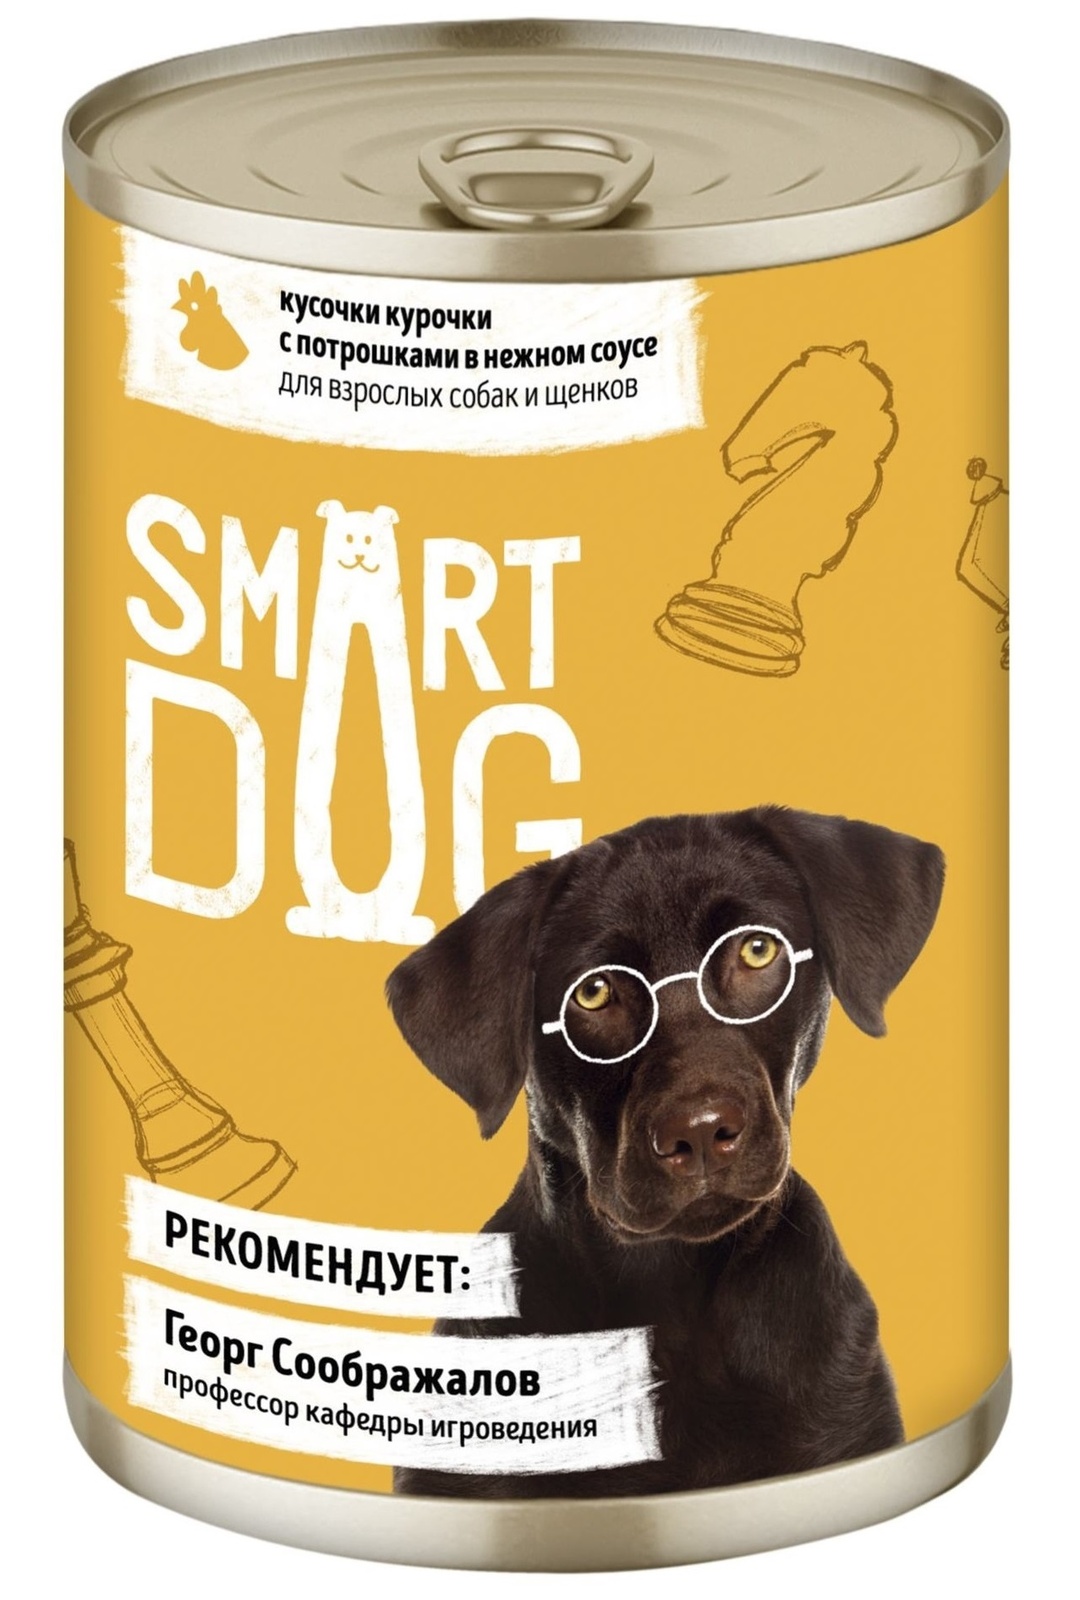 Smart Dog консервы Smart Dog консервы консервы для взрослых собак и щенков кусочки курочки с потрошками в нежном соусе (400 г)